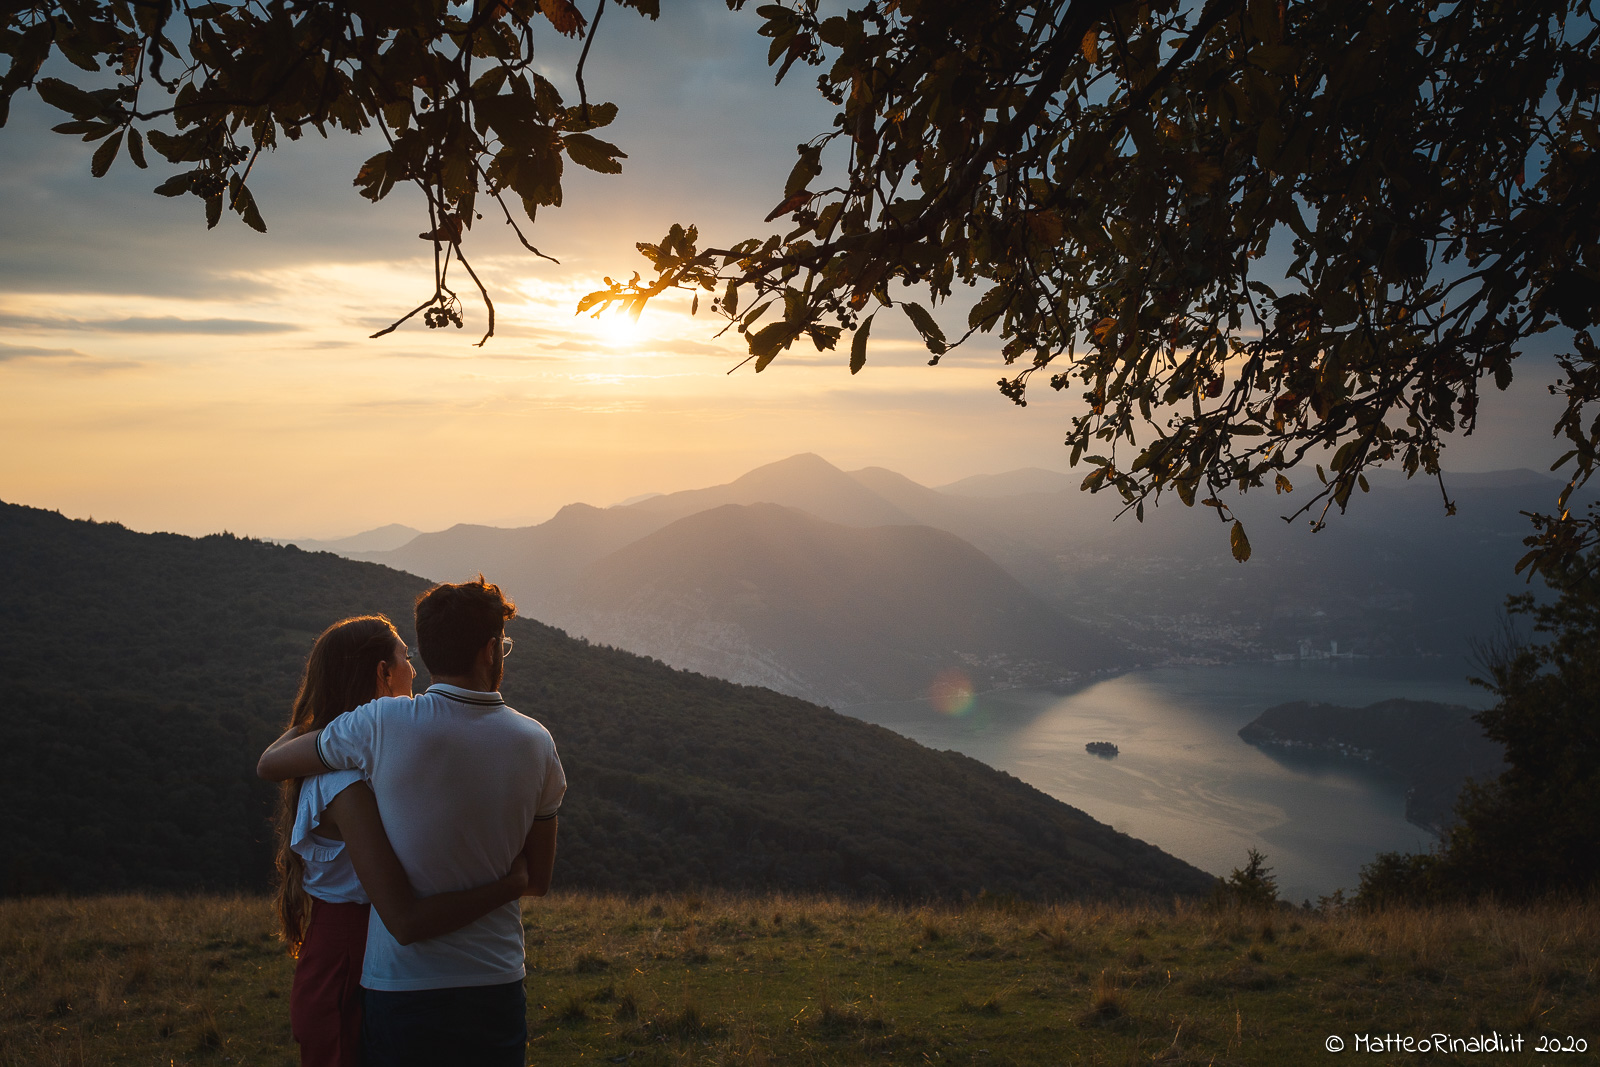 Coppia di futuri sposi che passeggia in mezzo alla natura, al tramonto, sulle creste delle montagne Bresciane attorno al lago d'Iseo